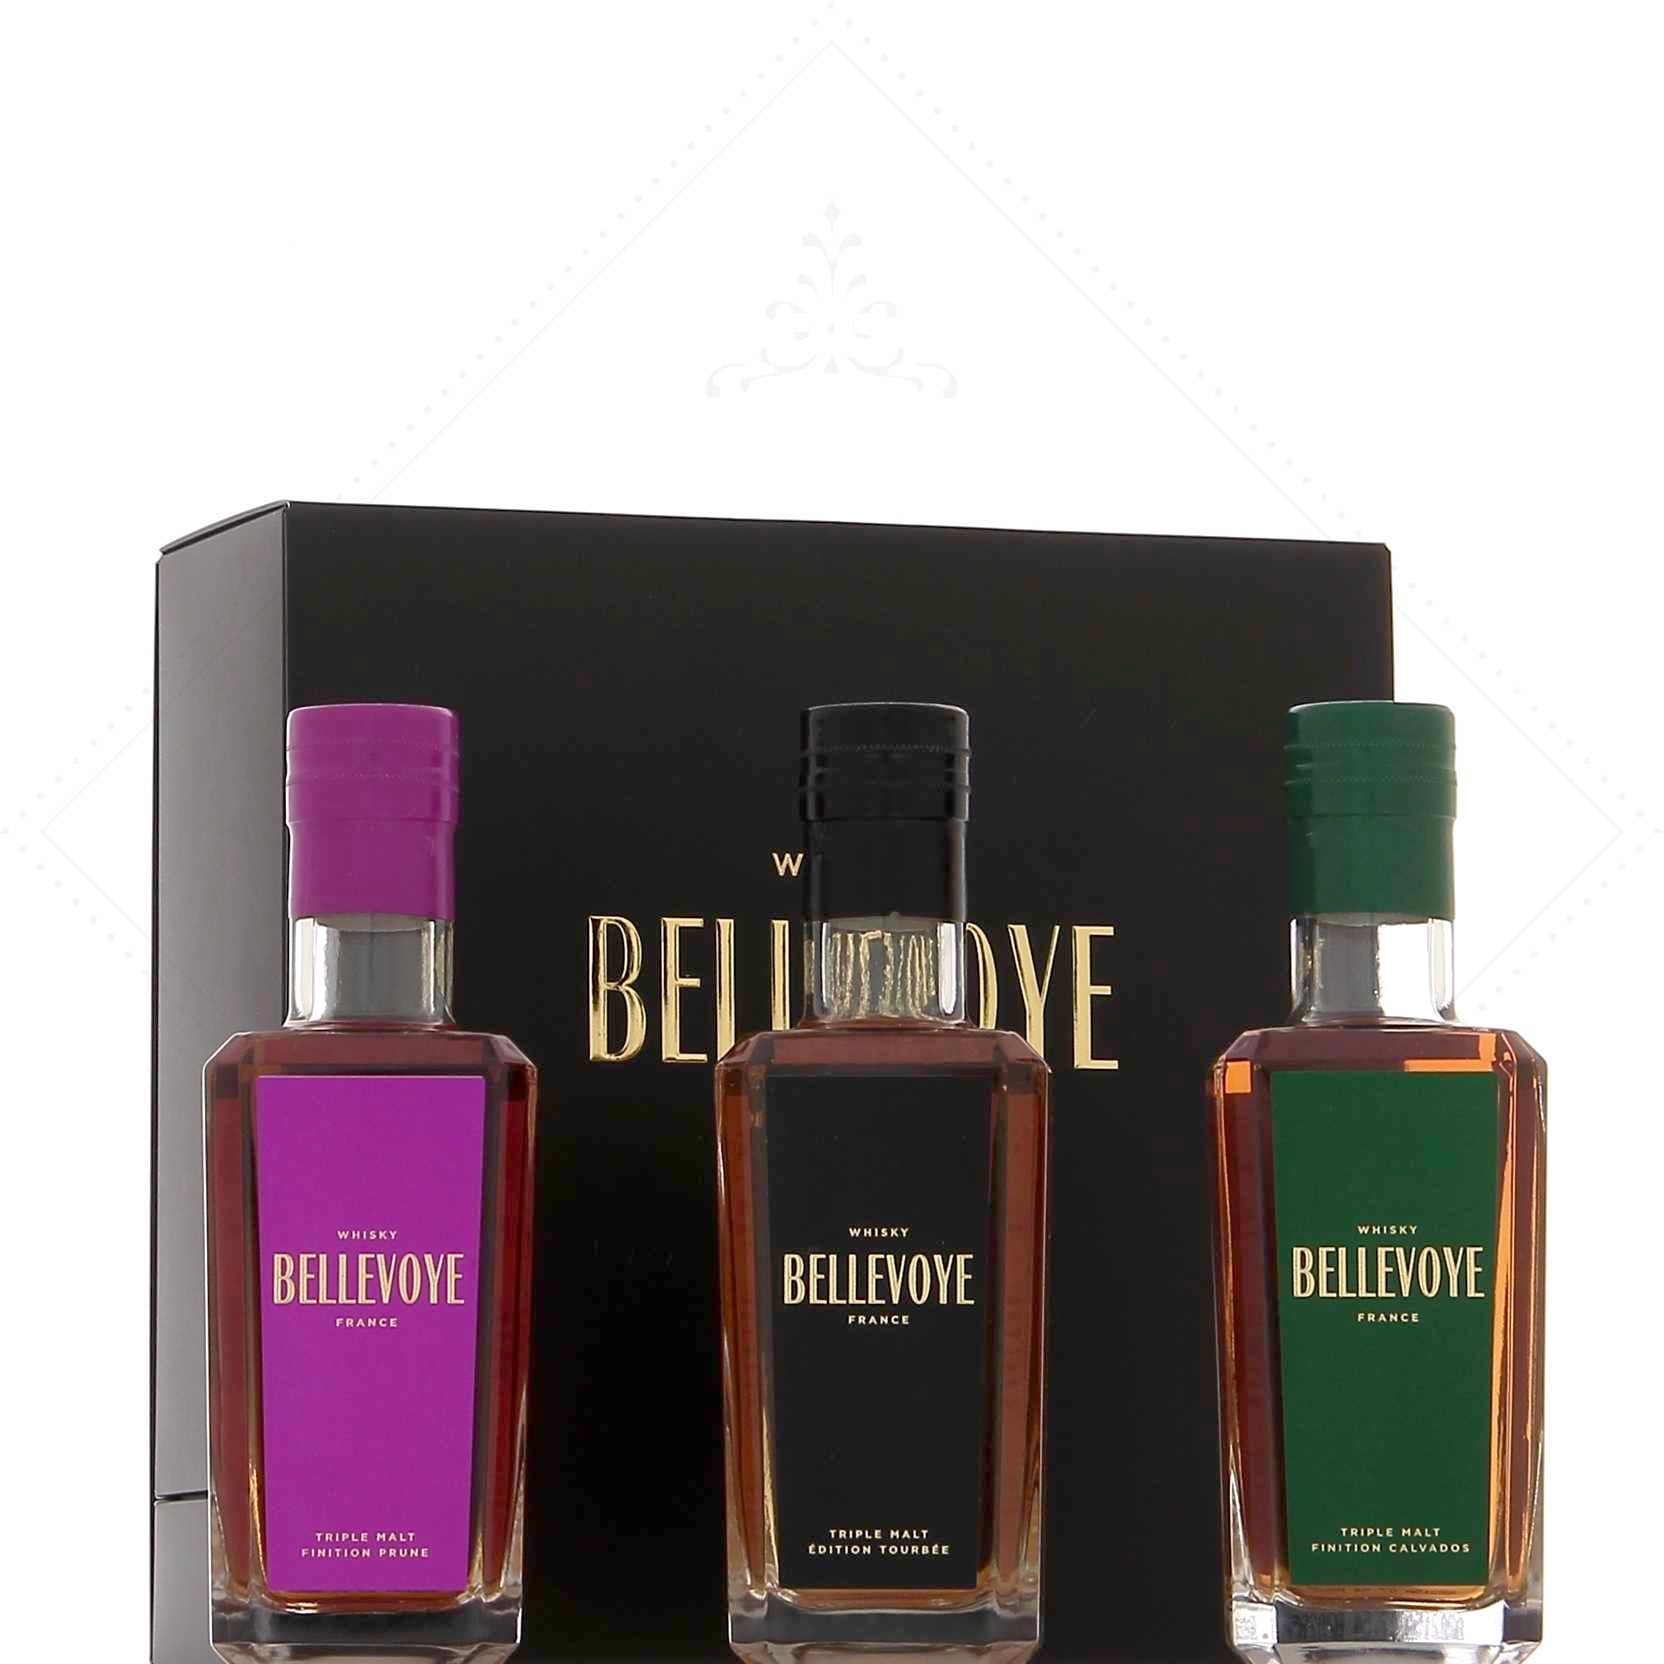 Bellevoye Noir Tourbée Triple Malt French Whisky